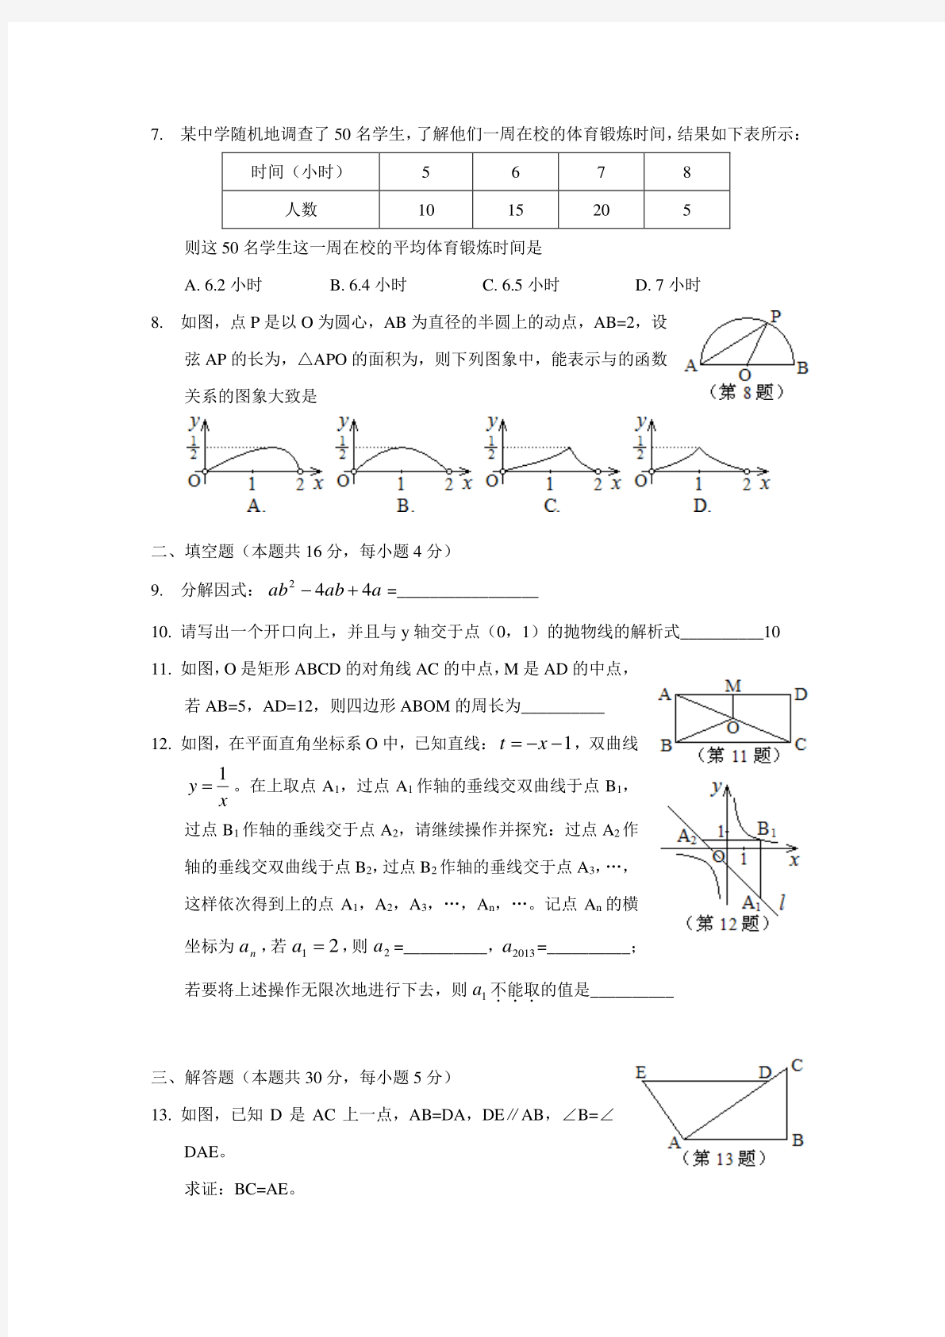 2013年历年北京市数学中考试卷及答案